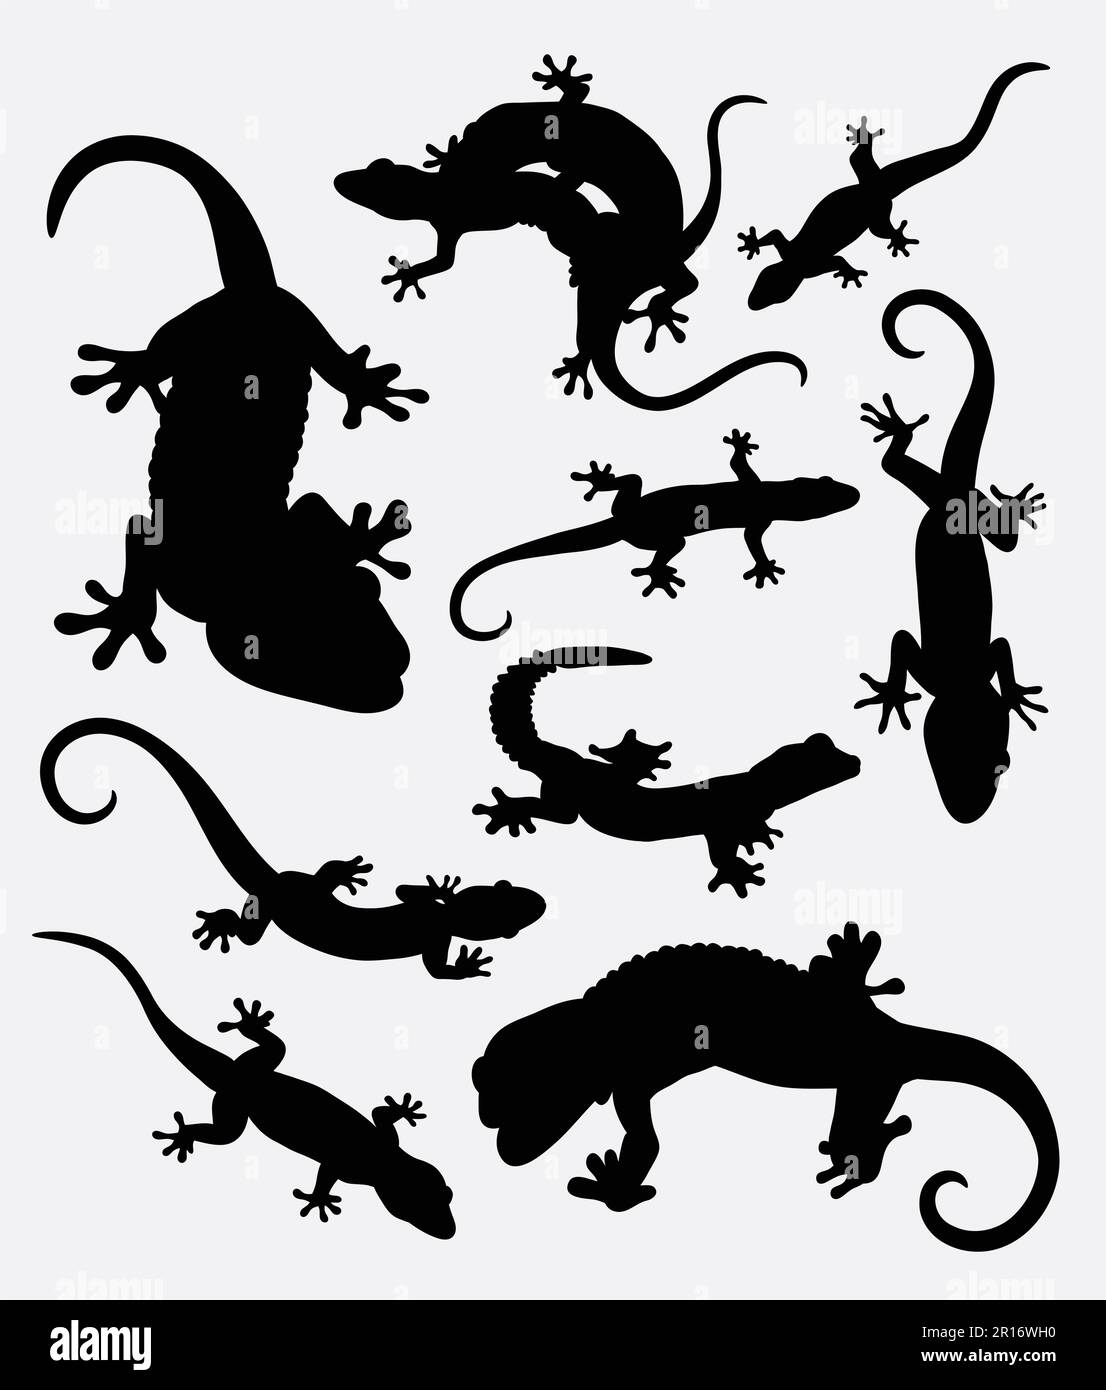 Lizard, gecko, silhouette d'animal reptile. Bon usage pour symbole, logo, icône web, éléments de jeu, mascotte, affiche, autocollant ou tout modèle que vous voulez Illustration de Vecteur